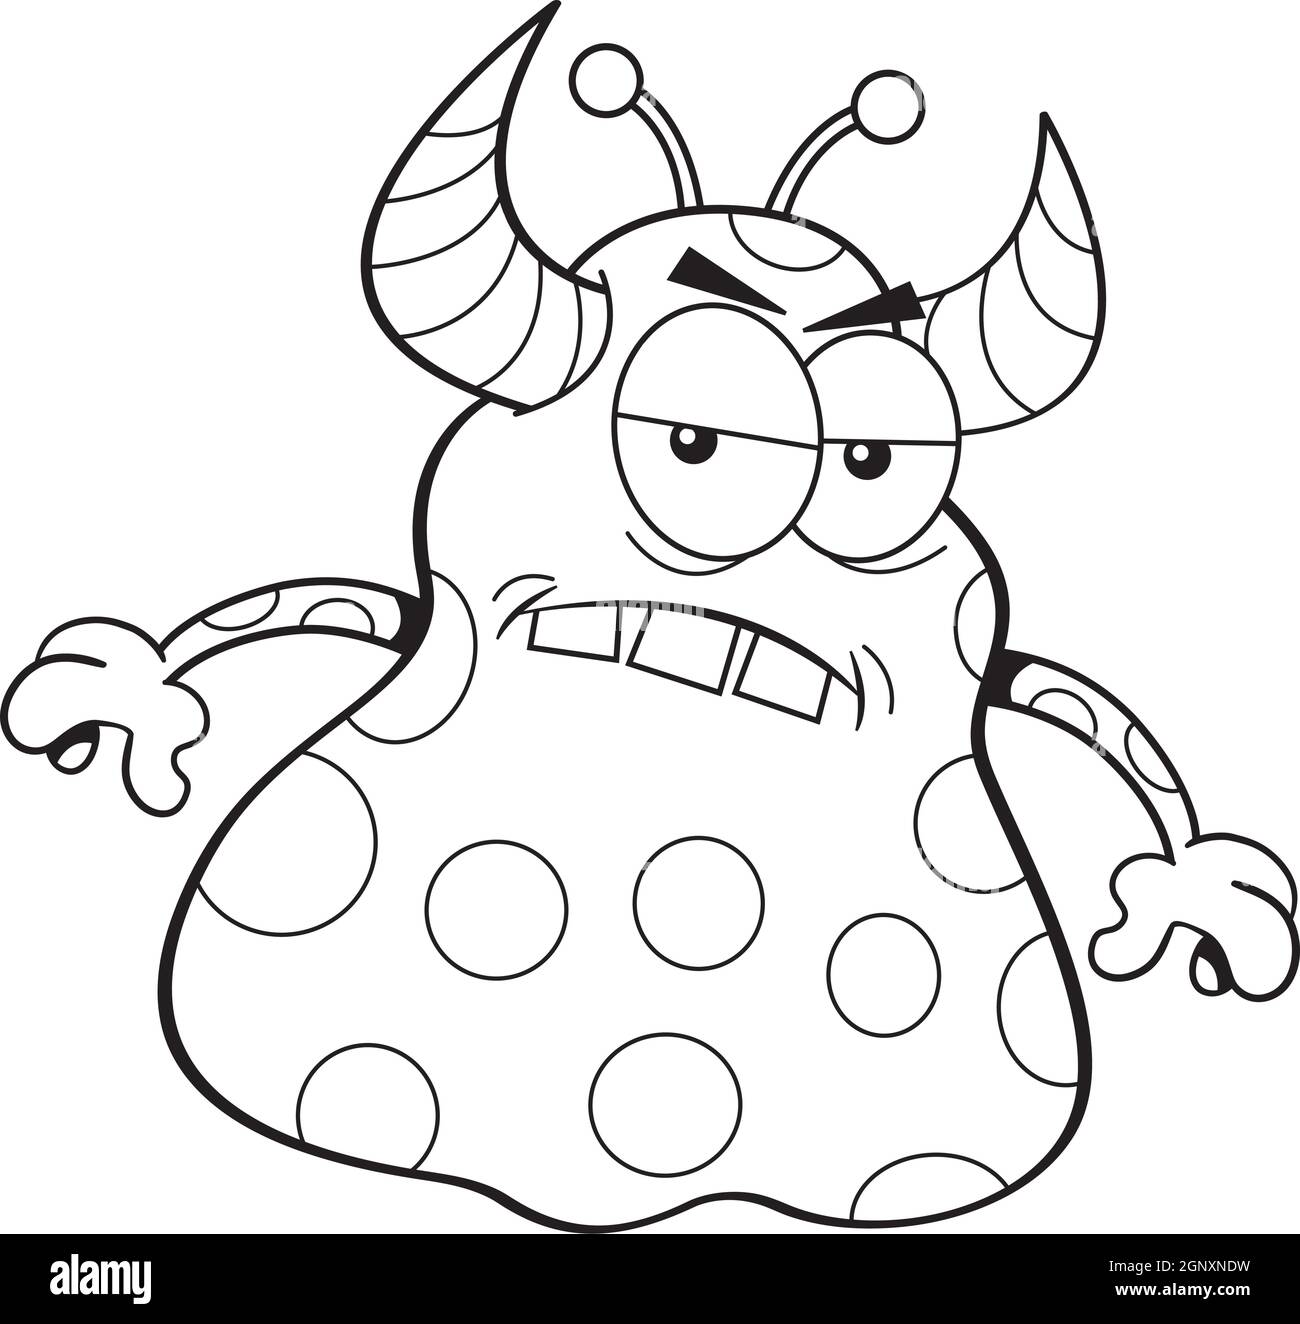 Illustrazione in bianco e nero di un mostro arrabbiato. Illustrazione Vettoriale